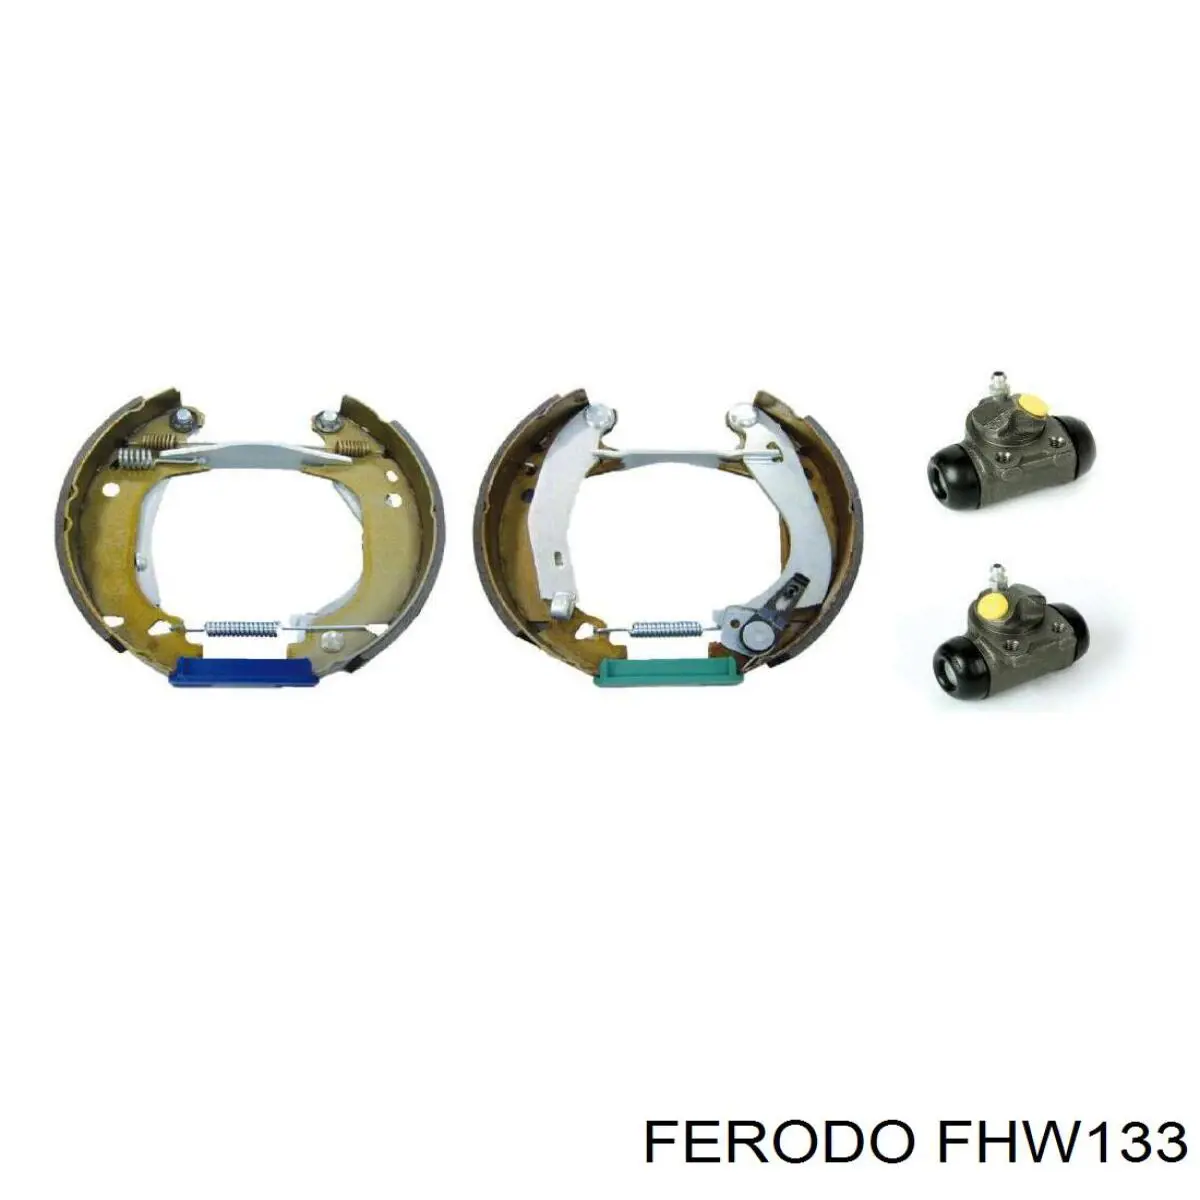 FHW133 Ferodo cilindro de freno de rueda trasero